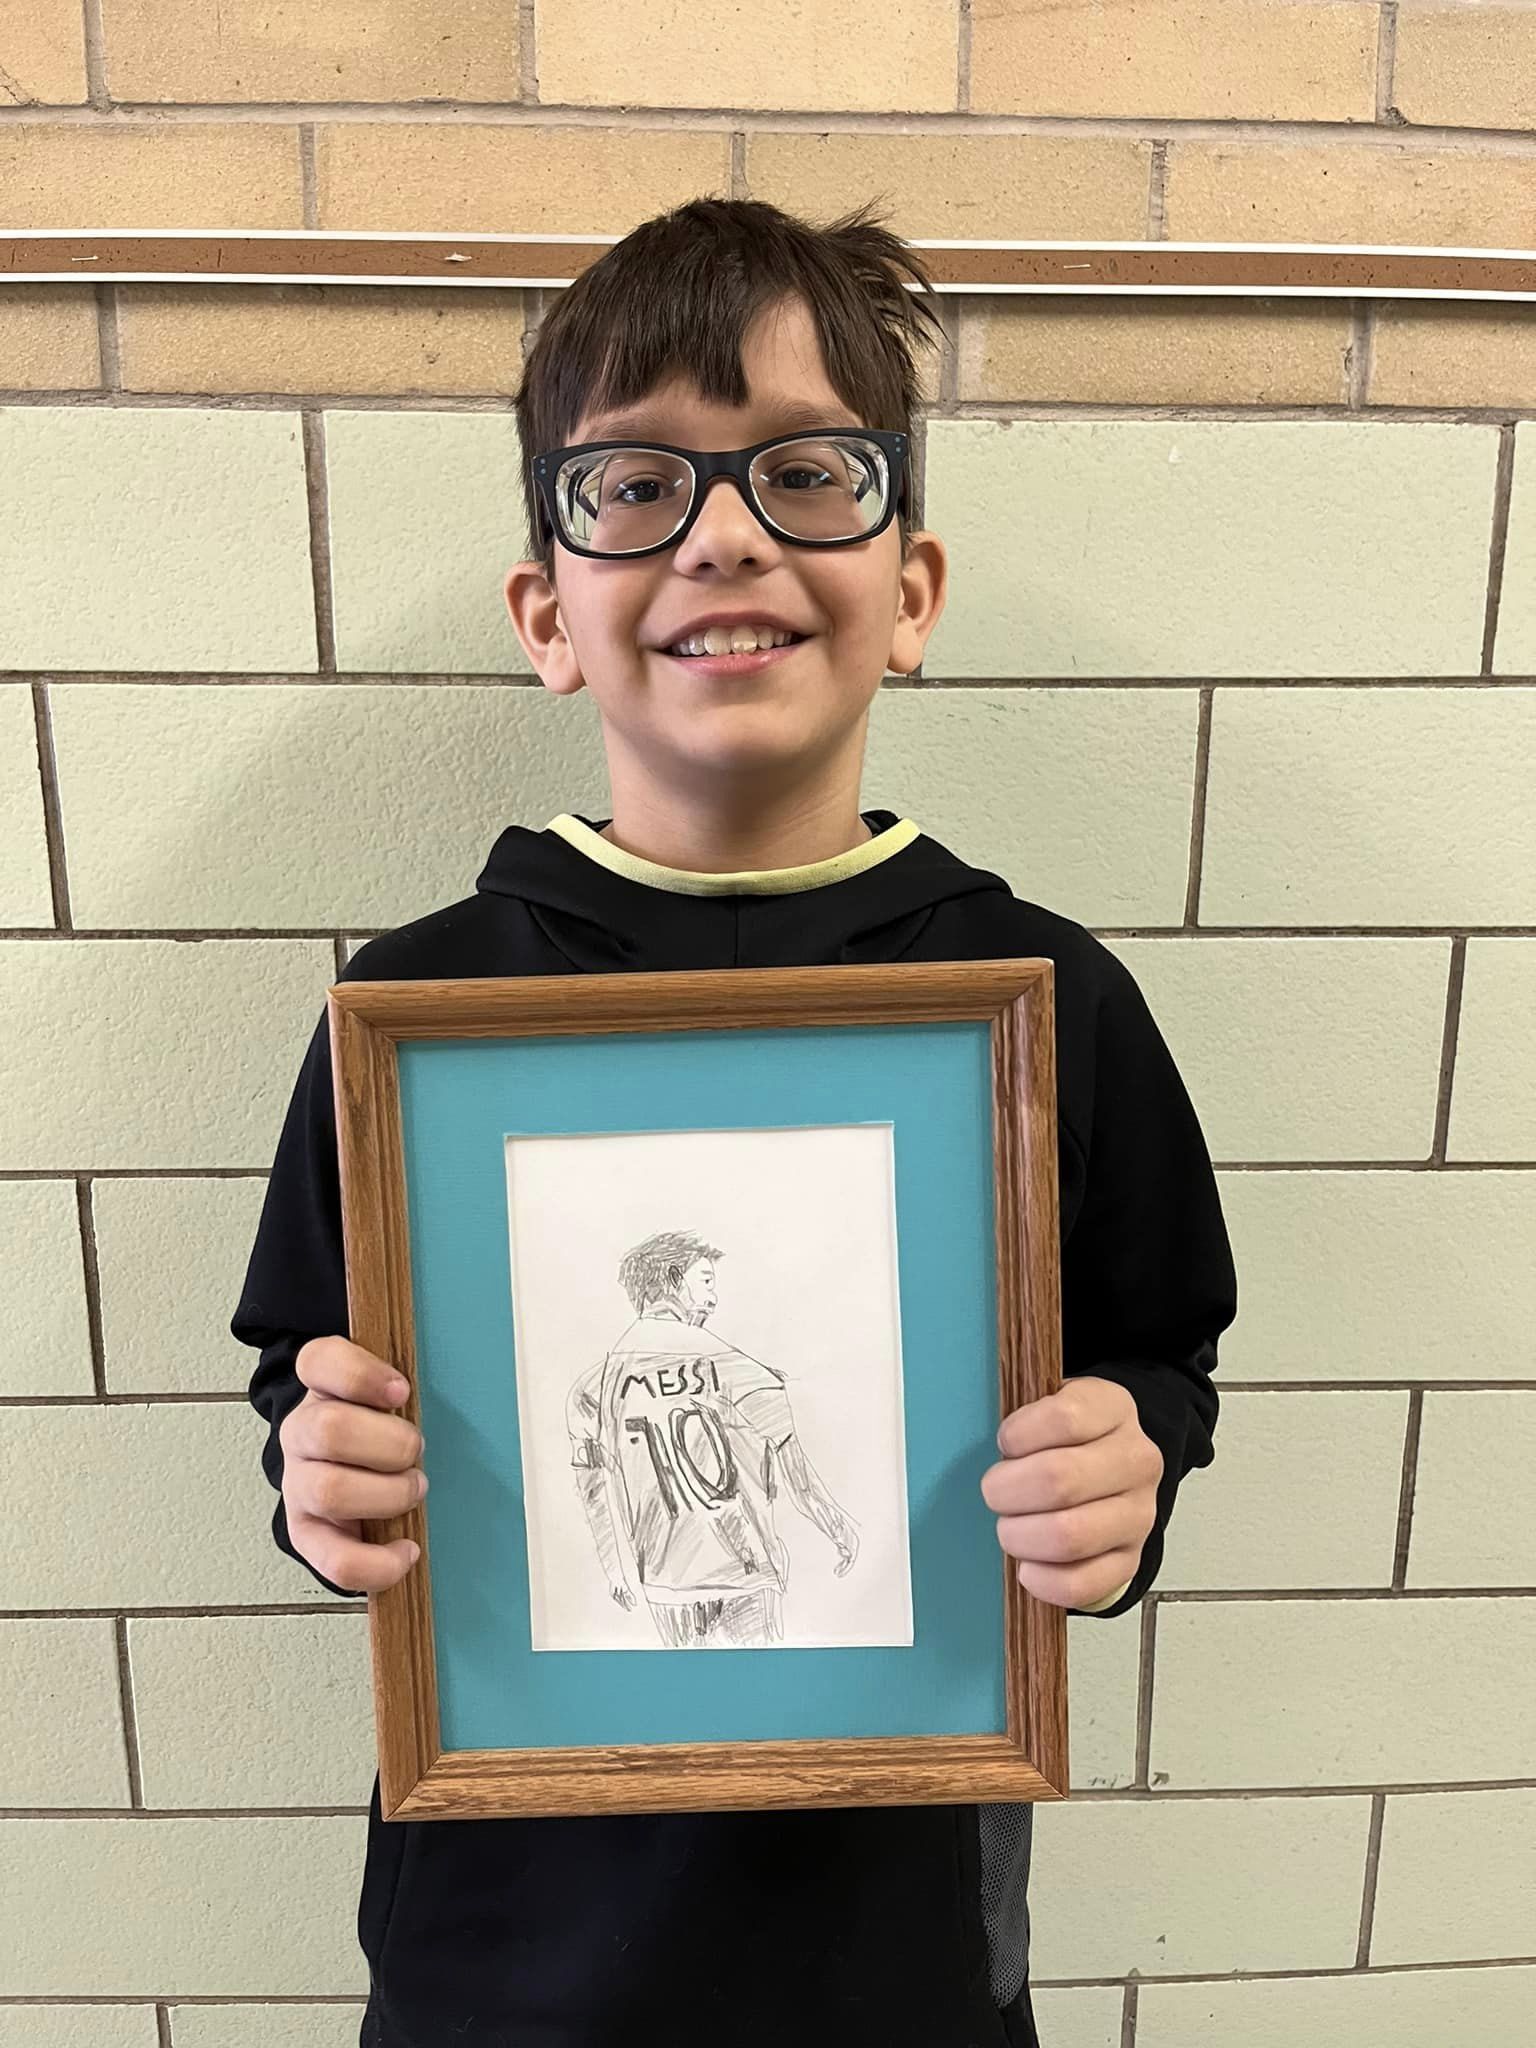 Child holding artwork